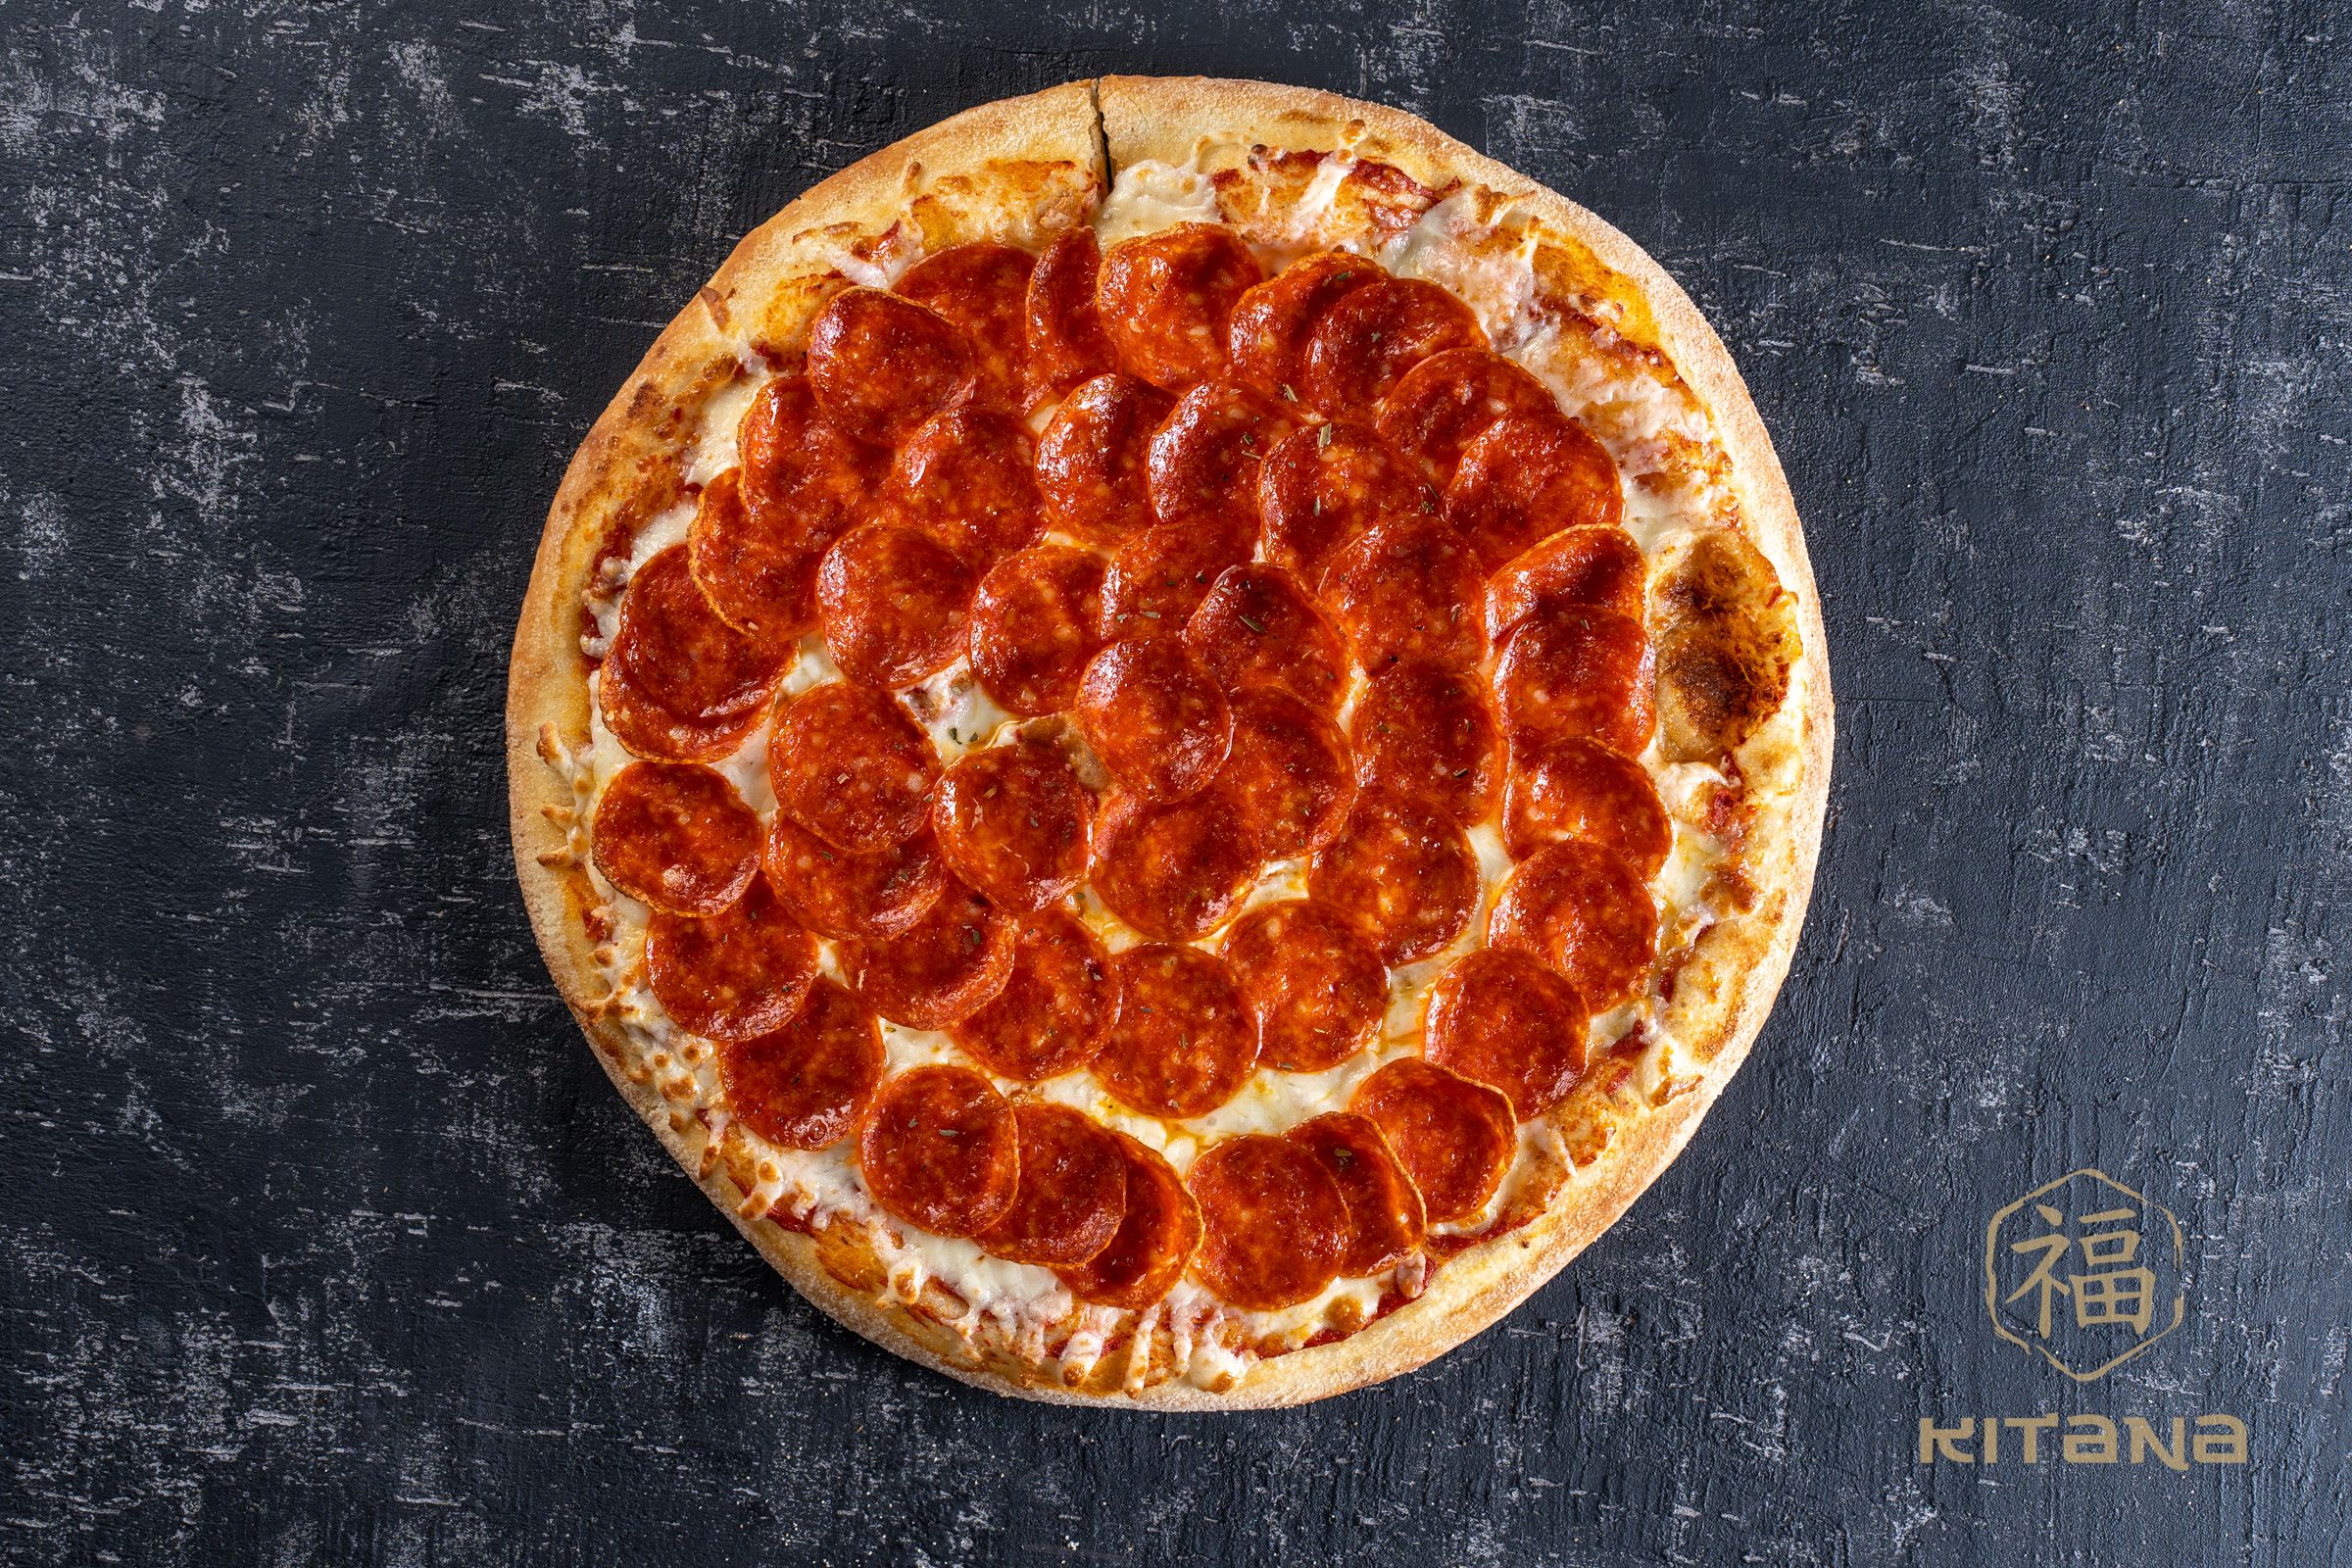 сколько калорий в куске пиццы пепперони додо фото 102